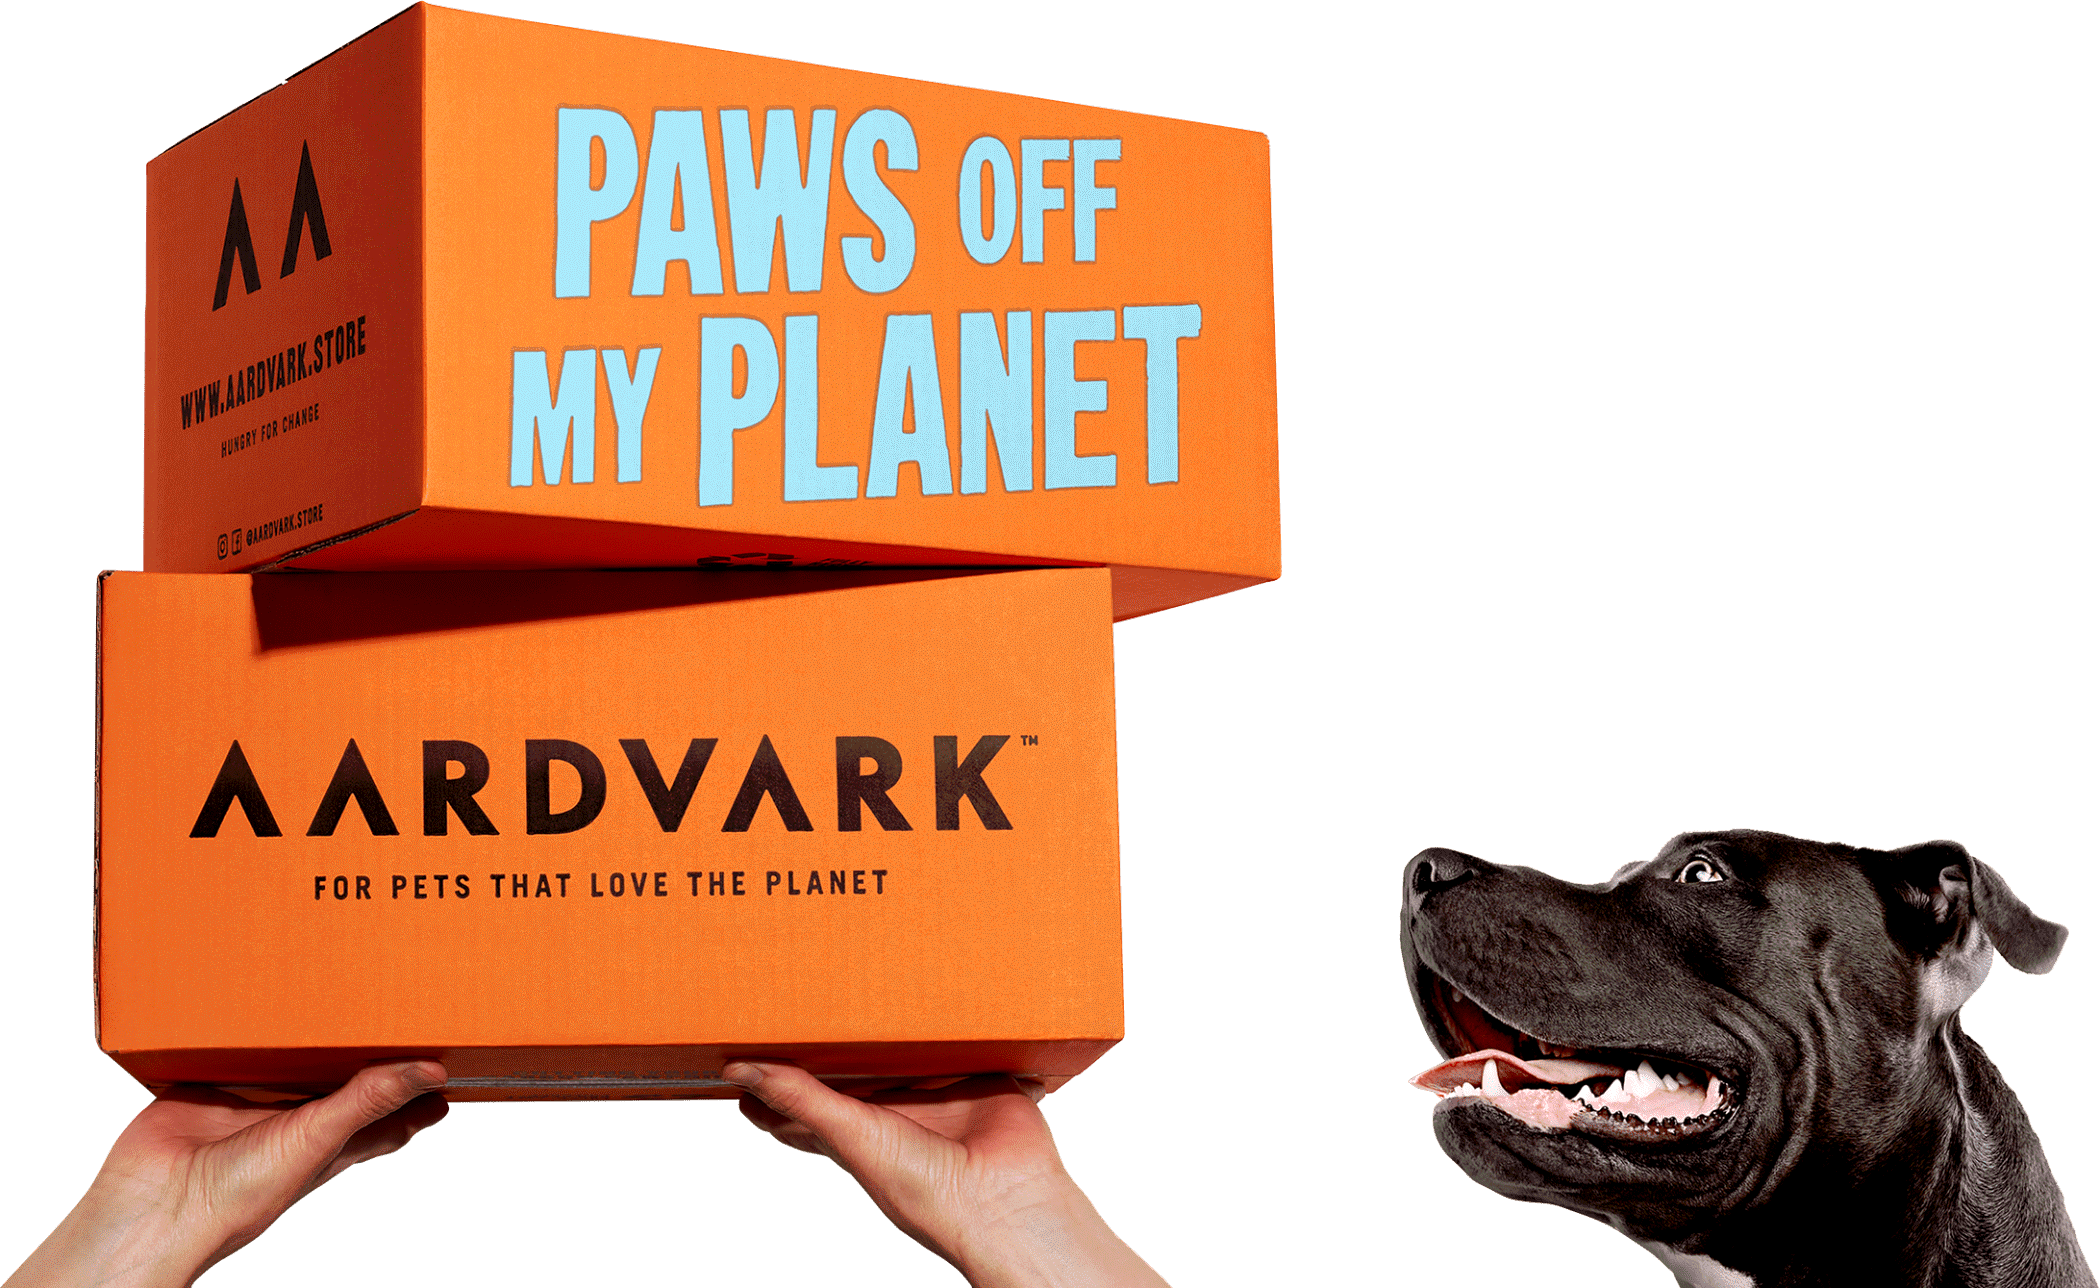 Aardvark Pet Food